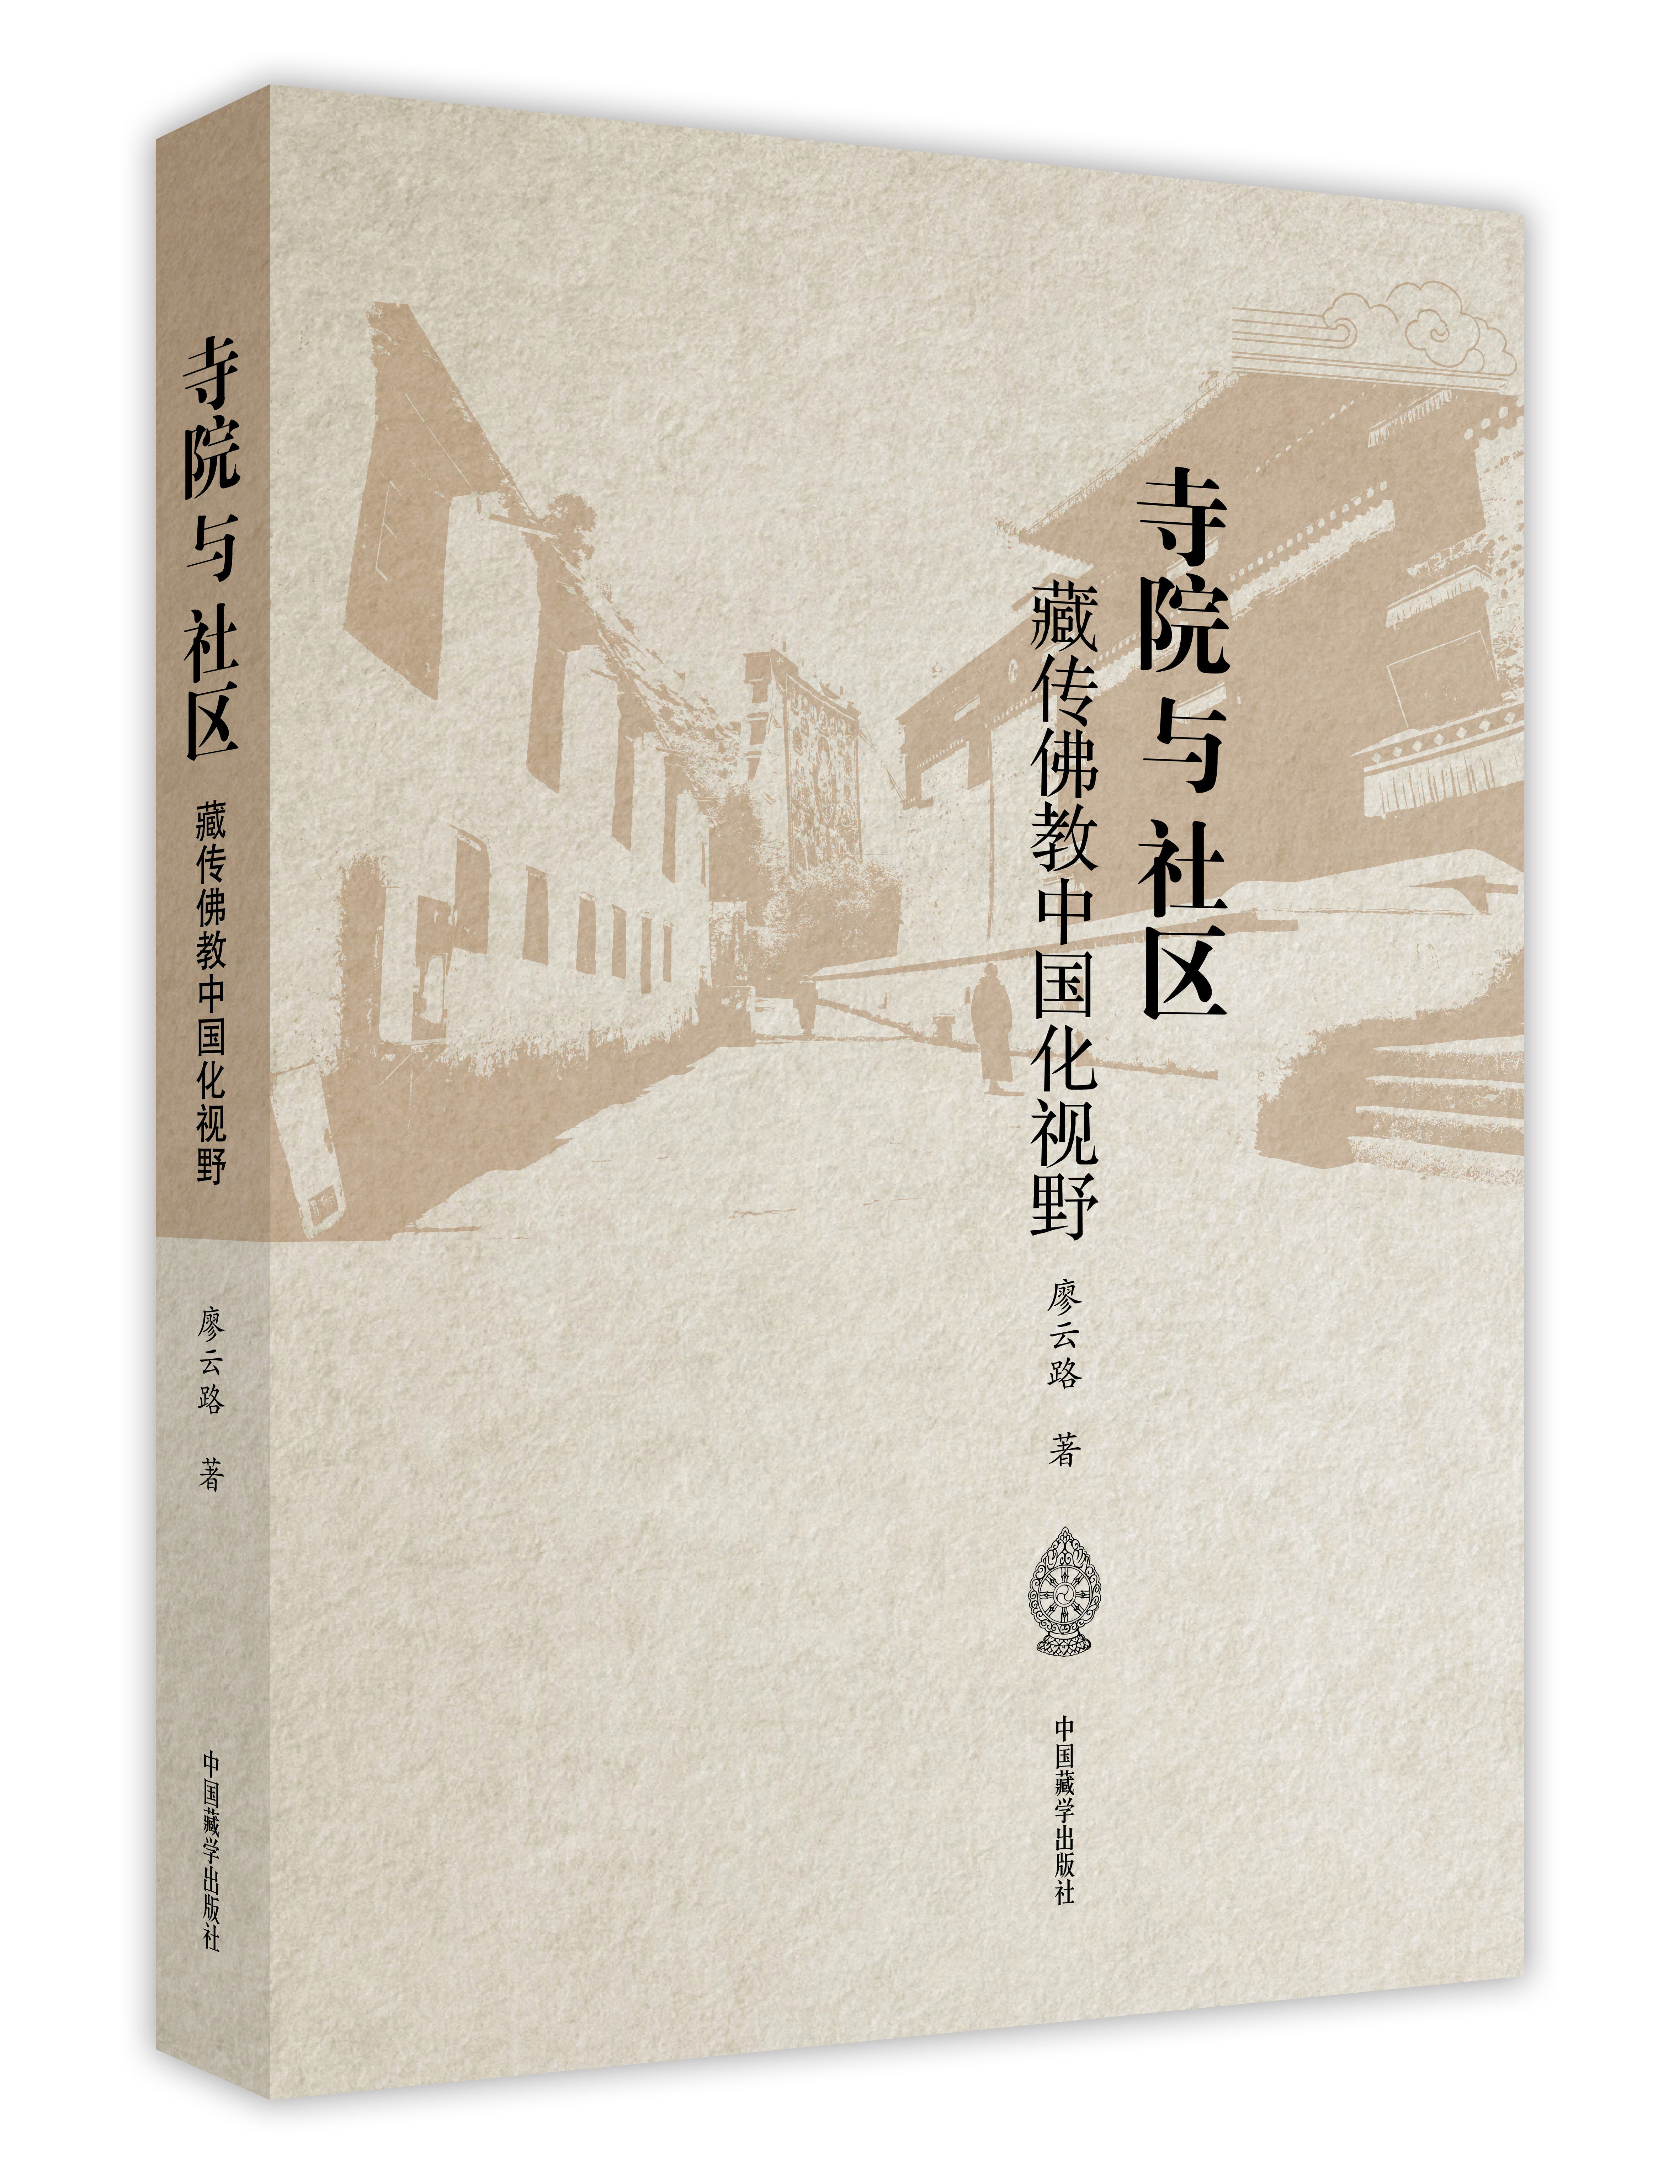 构建藏传佛教中国化学术话语体系 《寺院与社区：藏传佛教中国化视野》新书发布